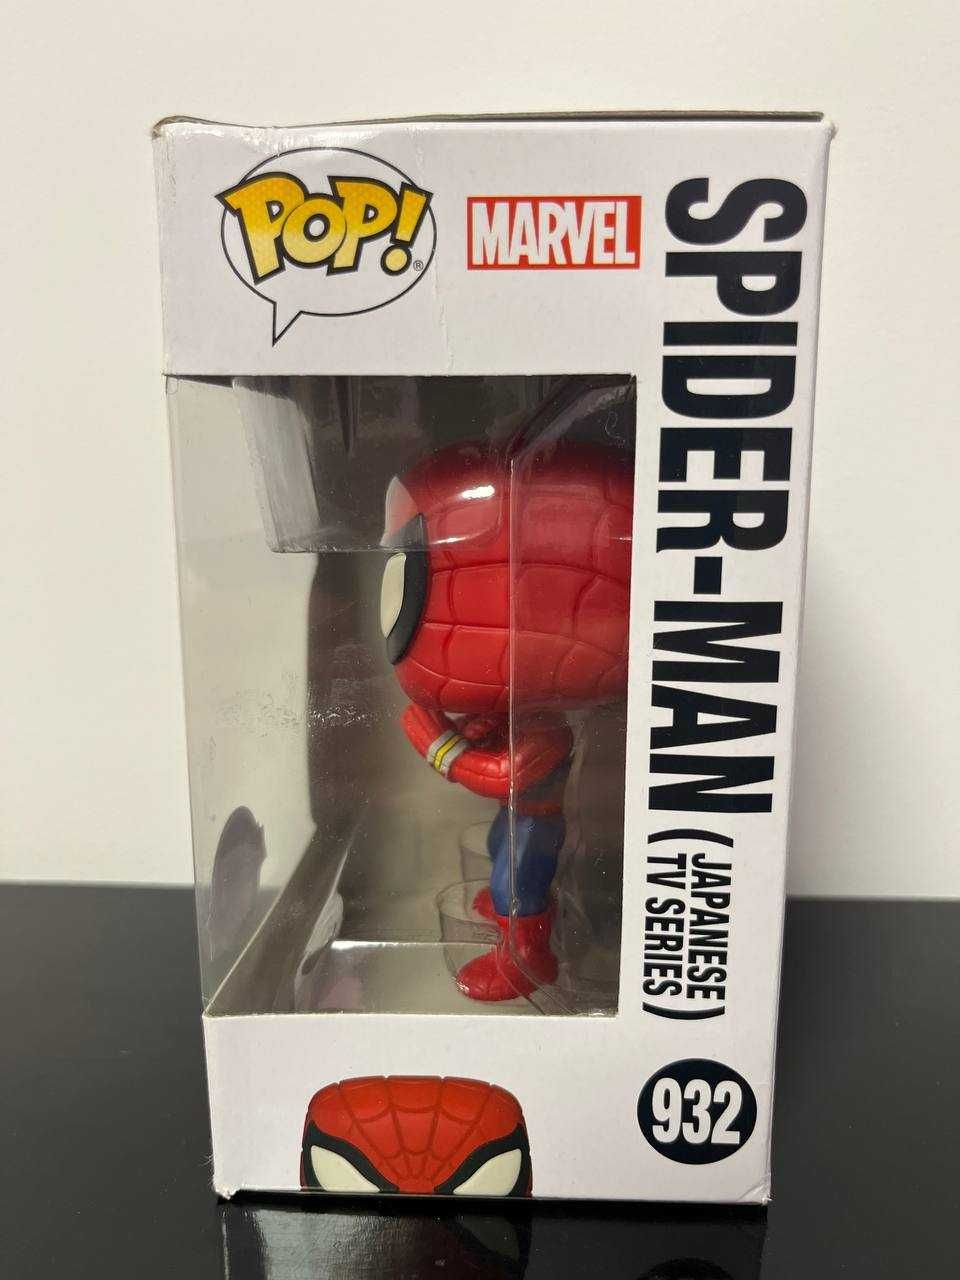 Funko Pop - Spider-Man №932